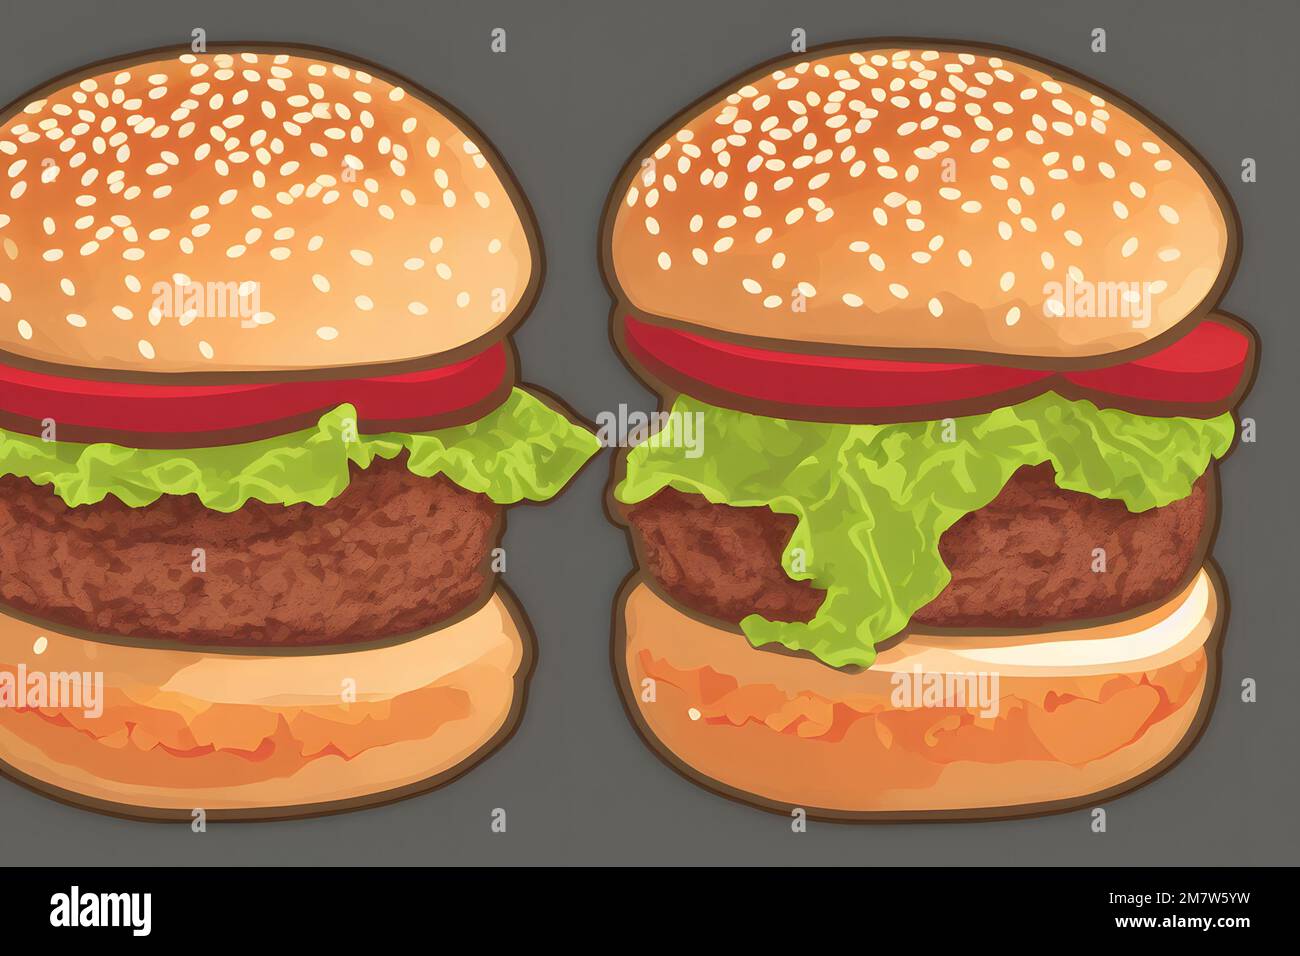 Illustrazione di hamburger in stile contemporaneo, un classico fast food Foto Stock